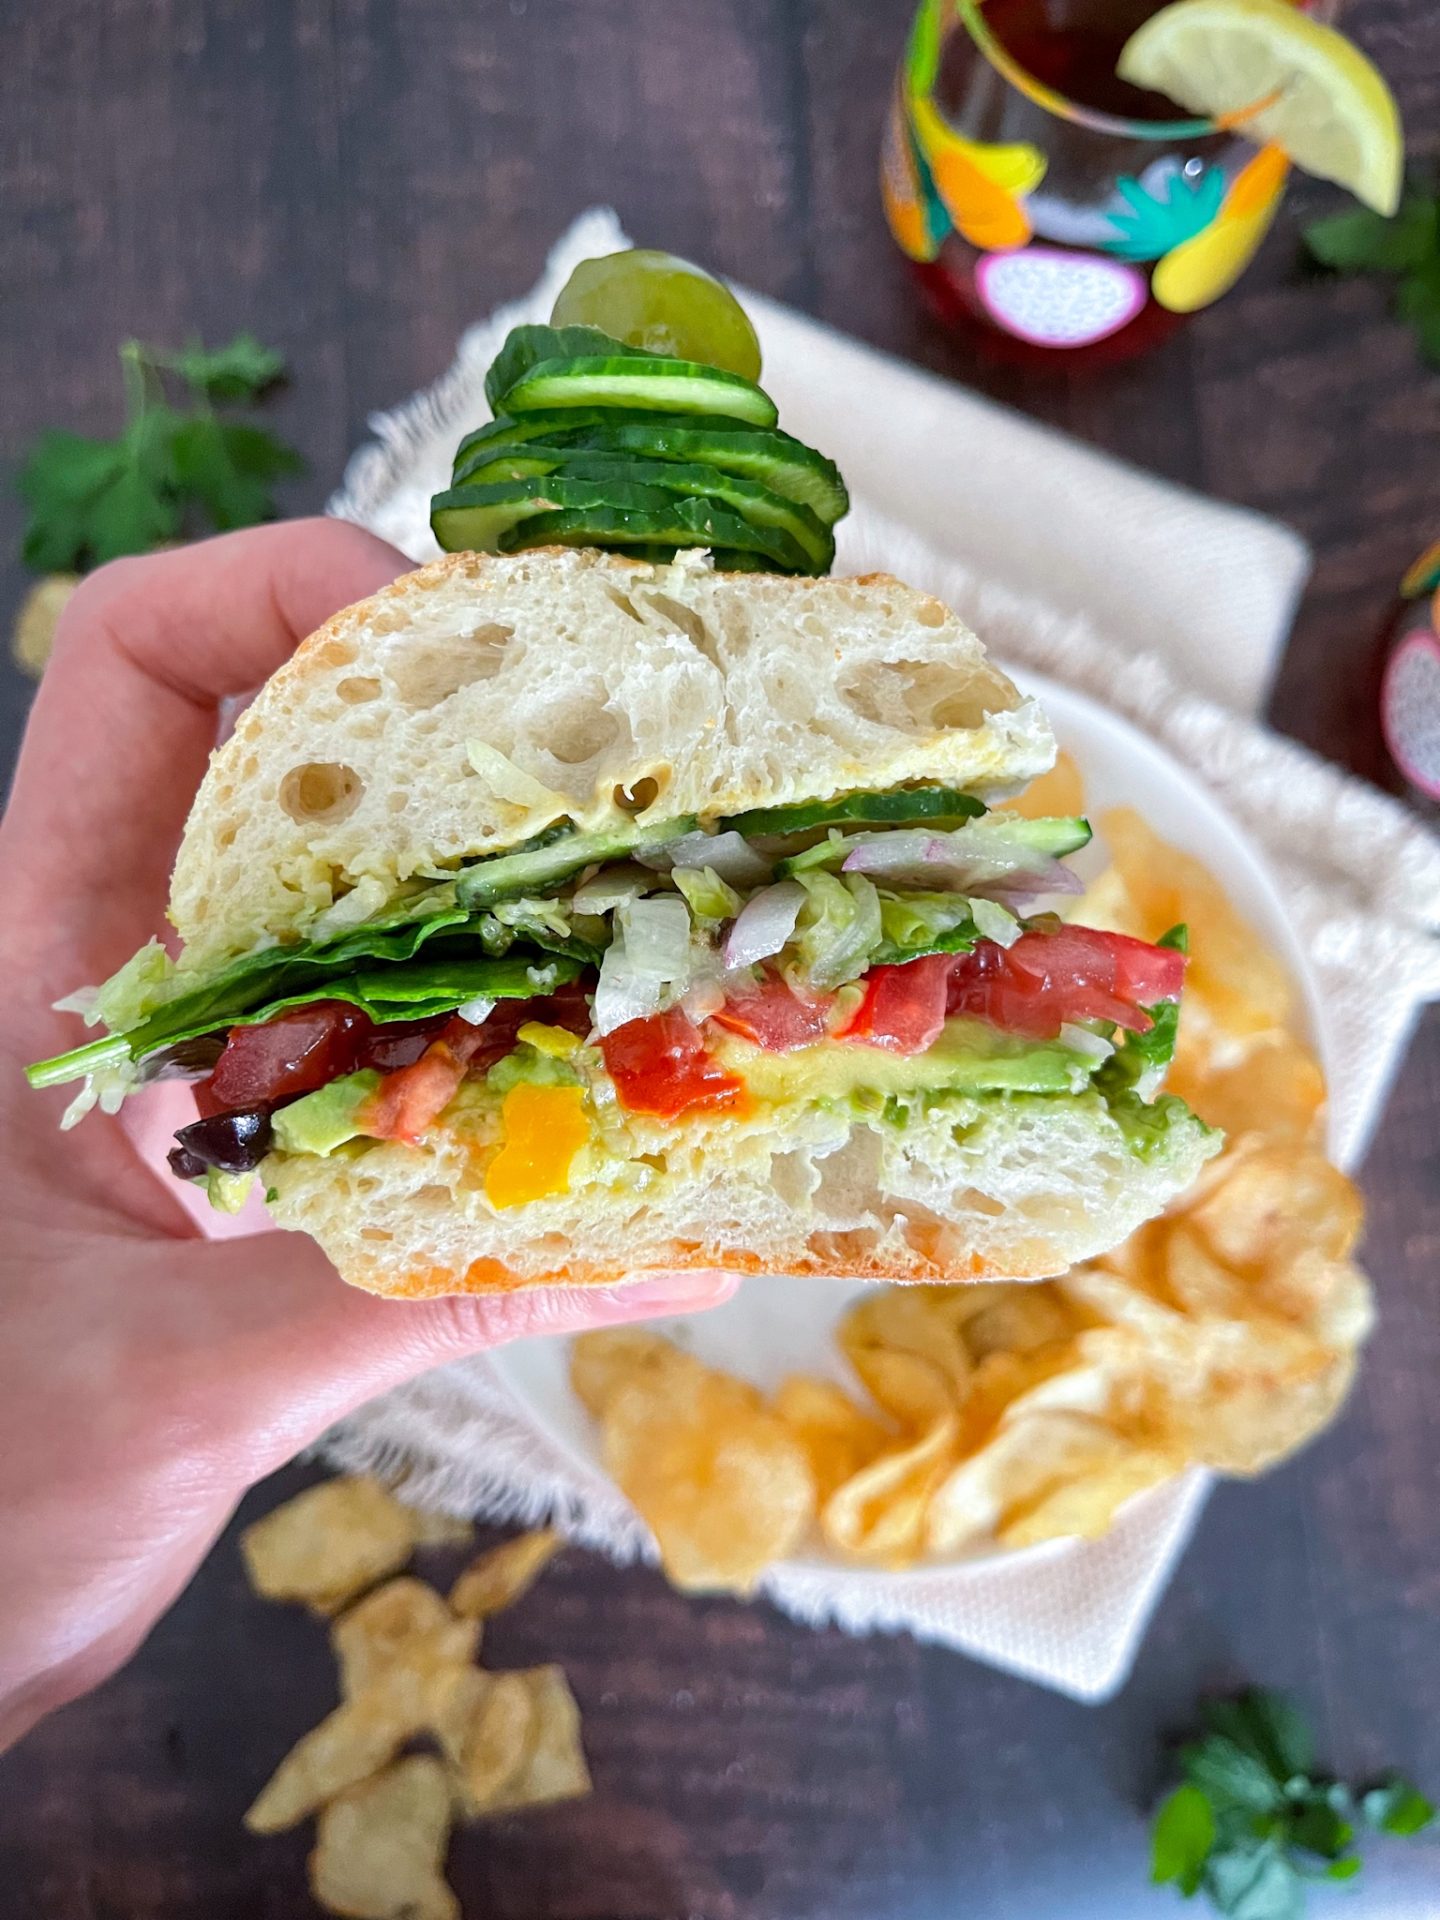 veggie sub sandwich on a wooden board